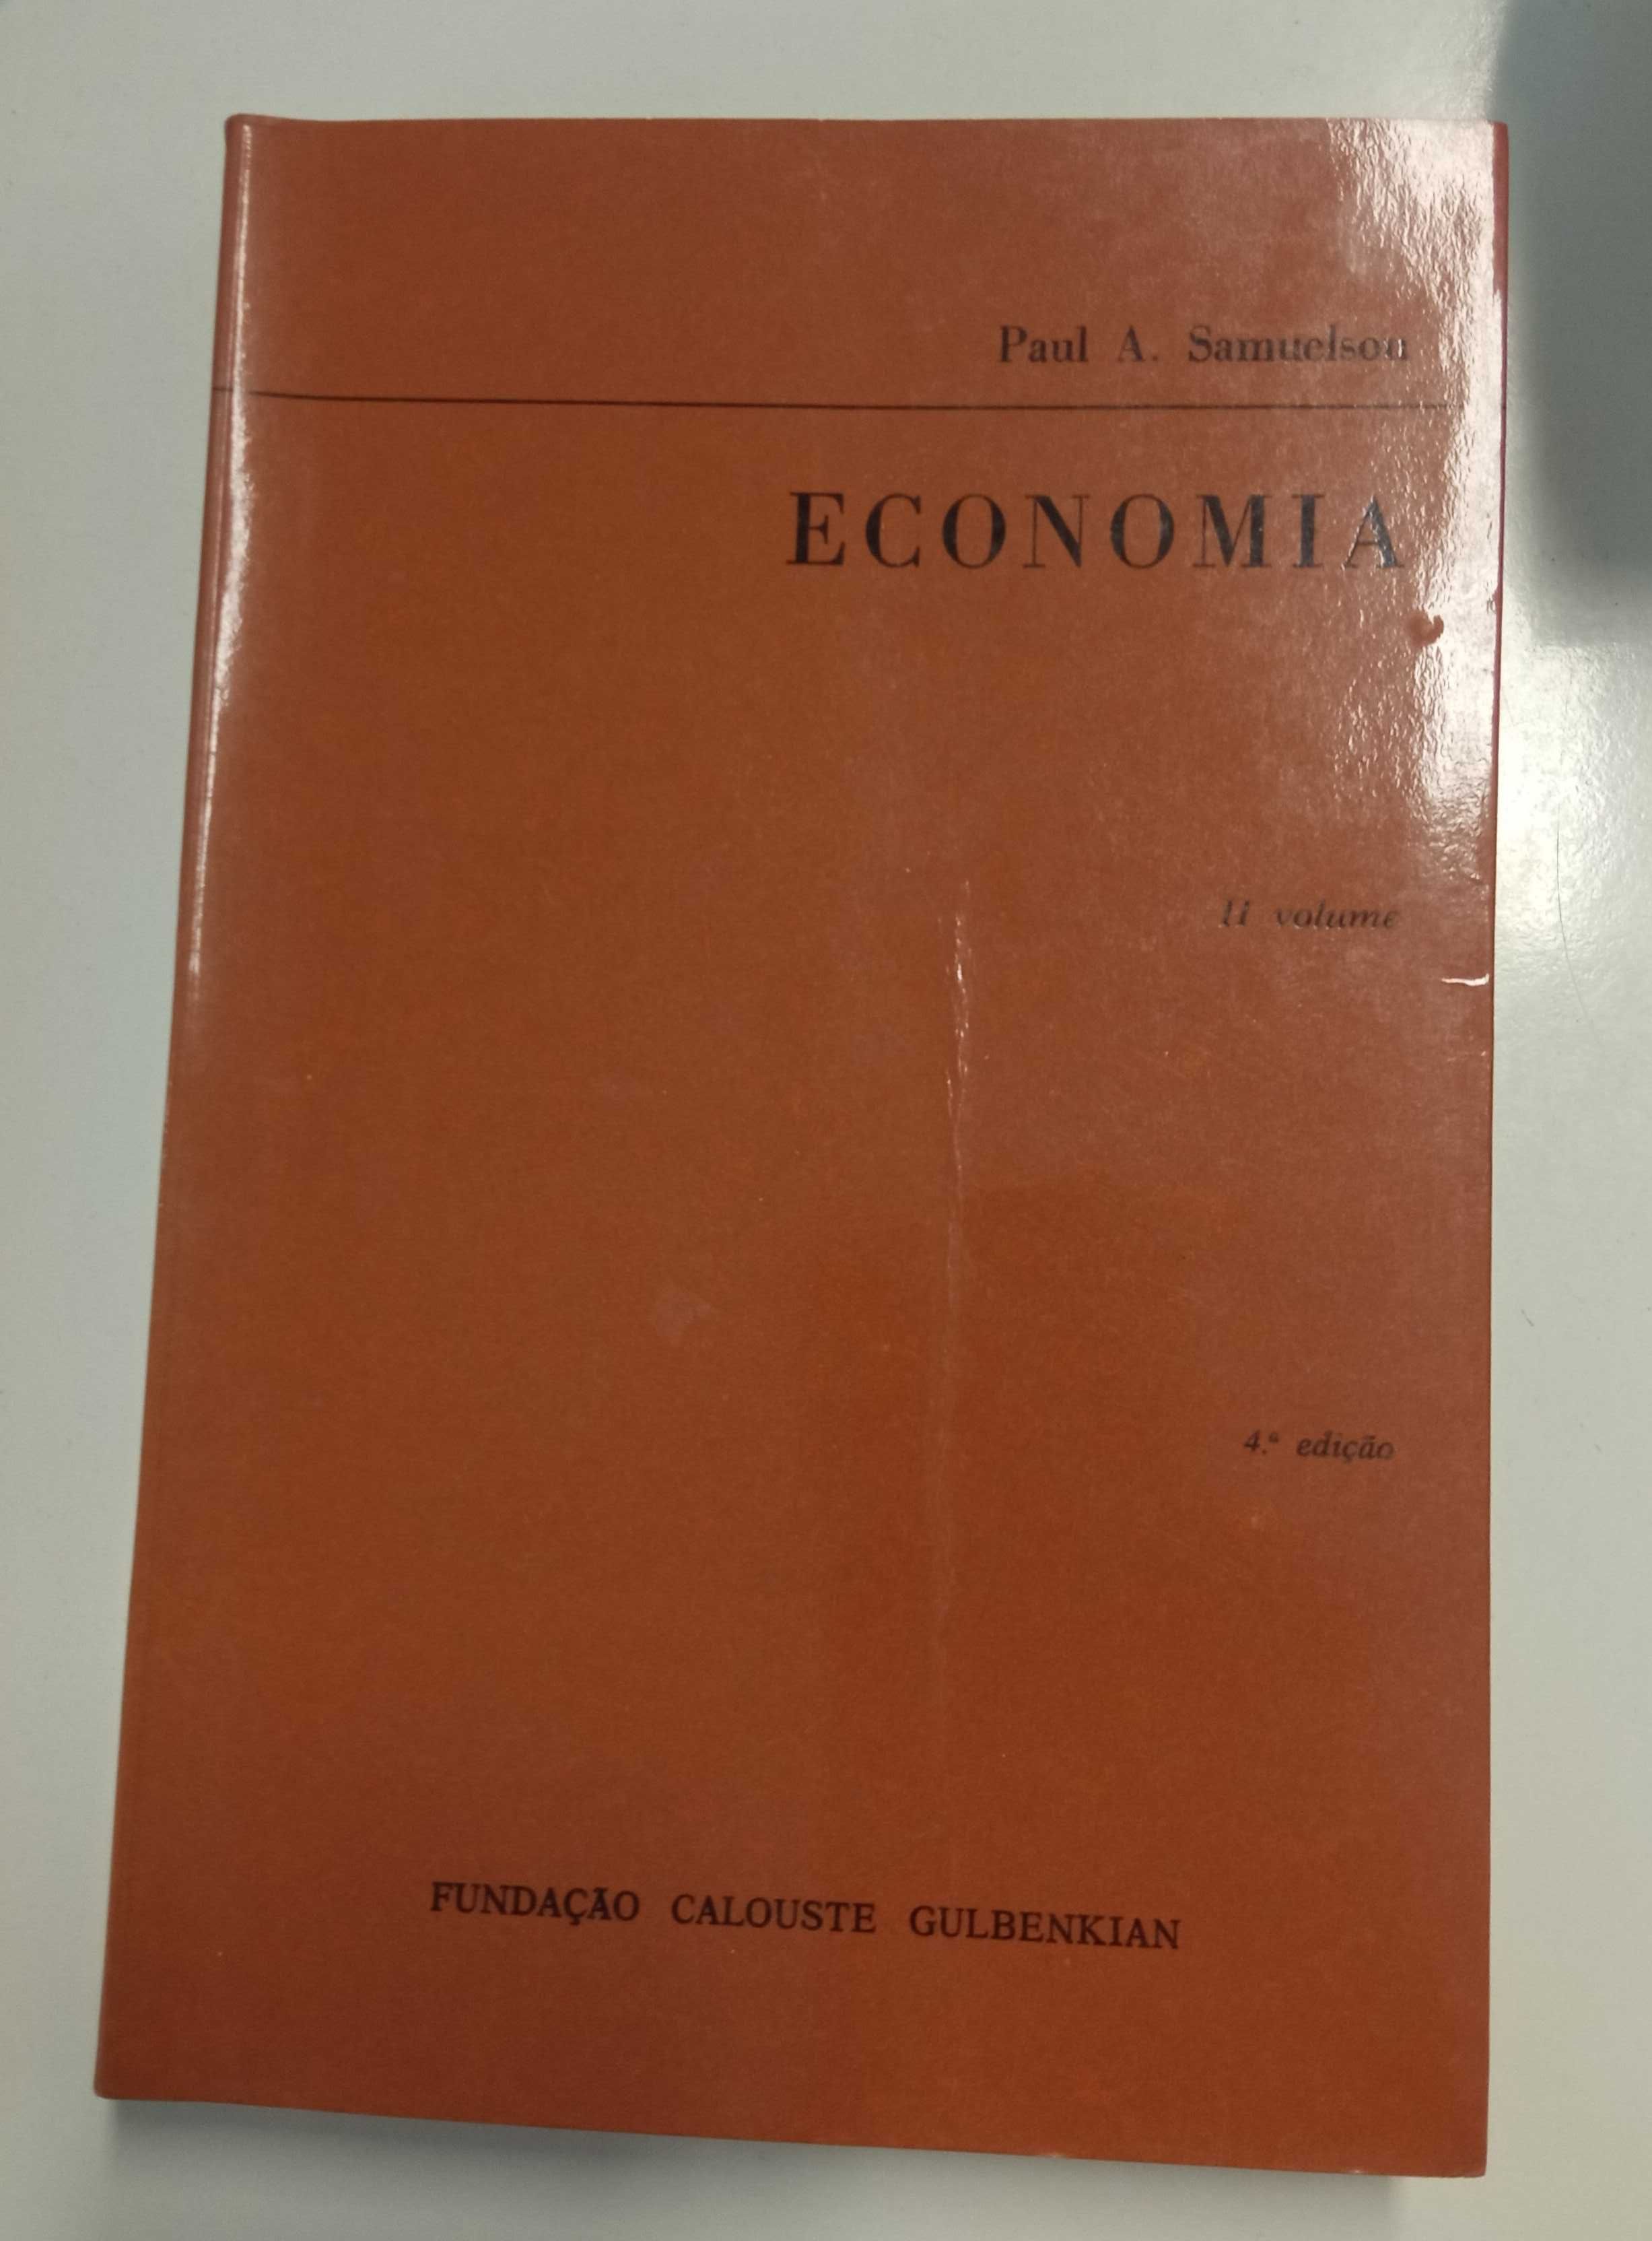 Economia, de Paul A. Samuelson